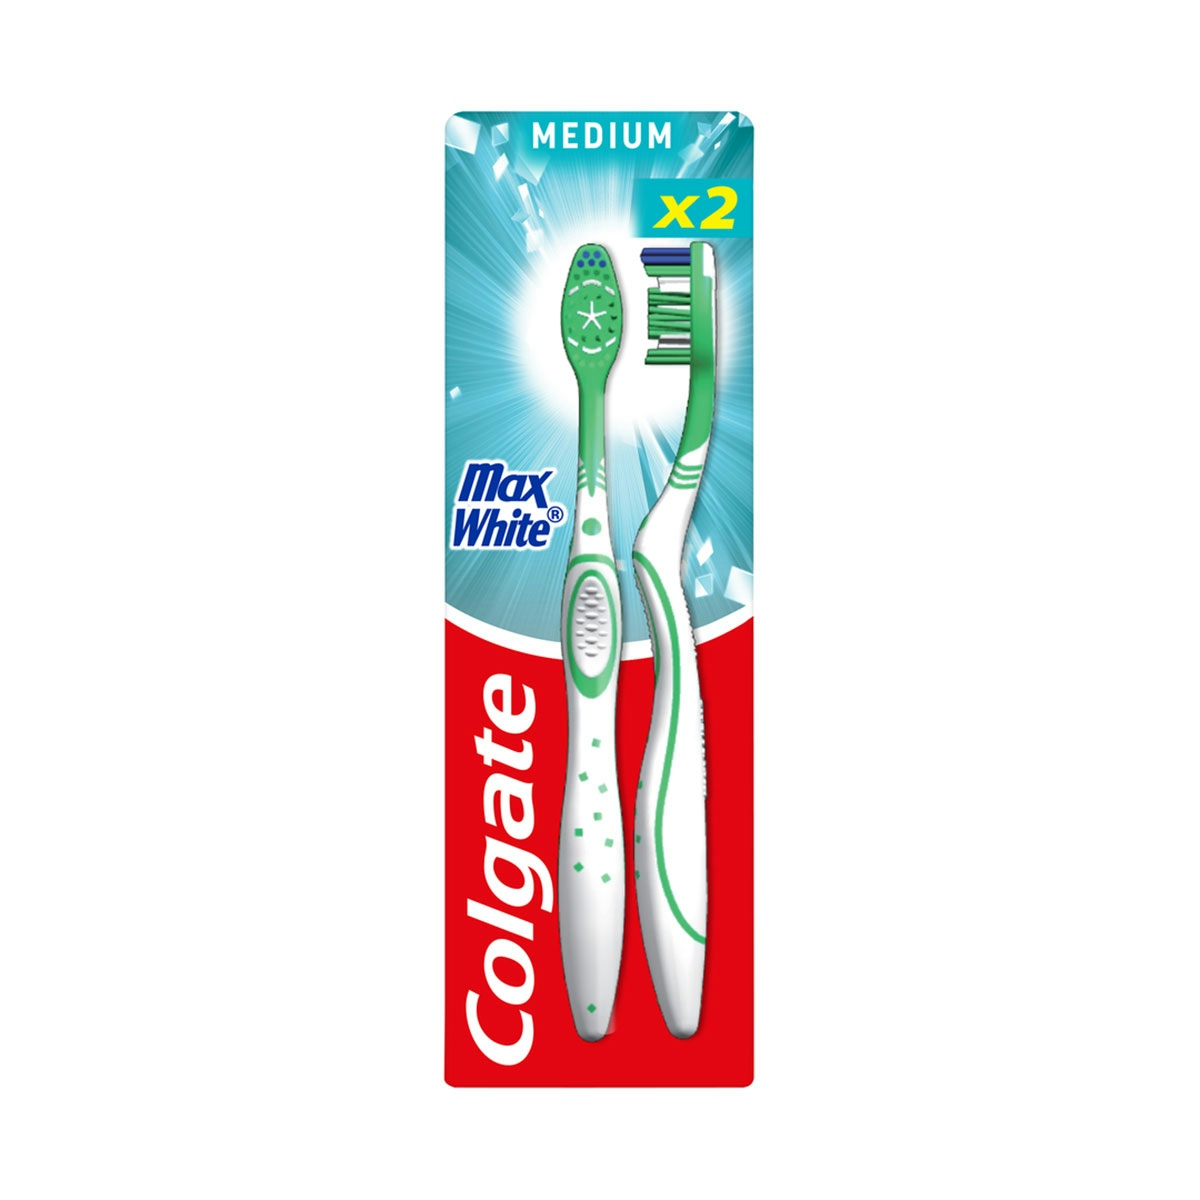 Cepillo de dientes blanqueador Colgate MaxWhite medio, 2uds